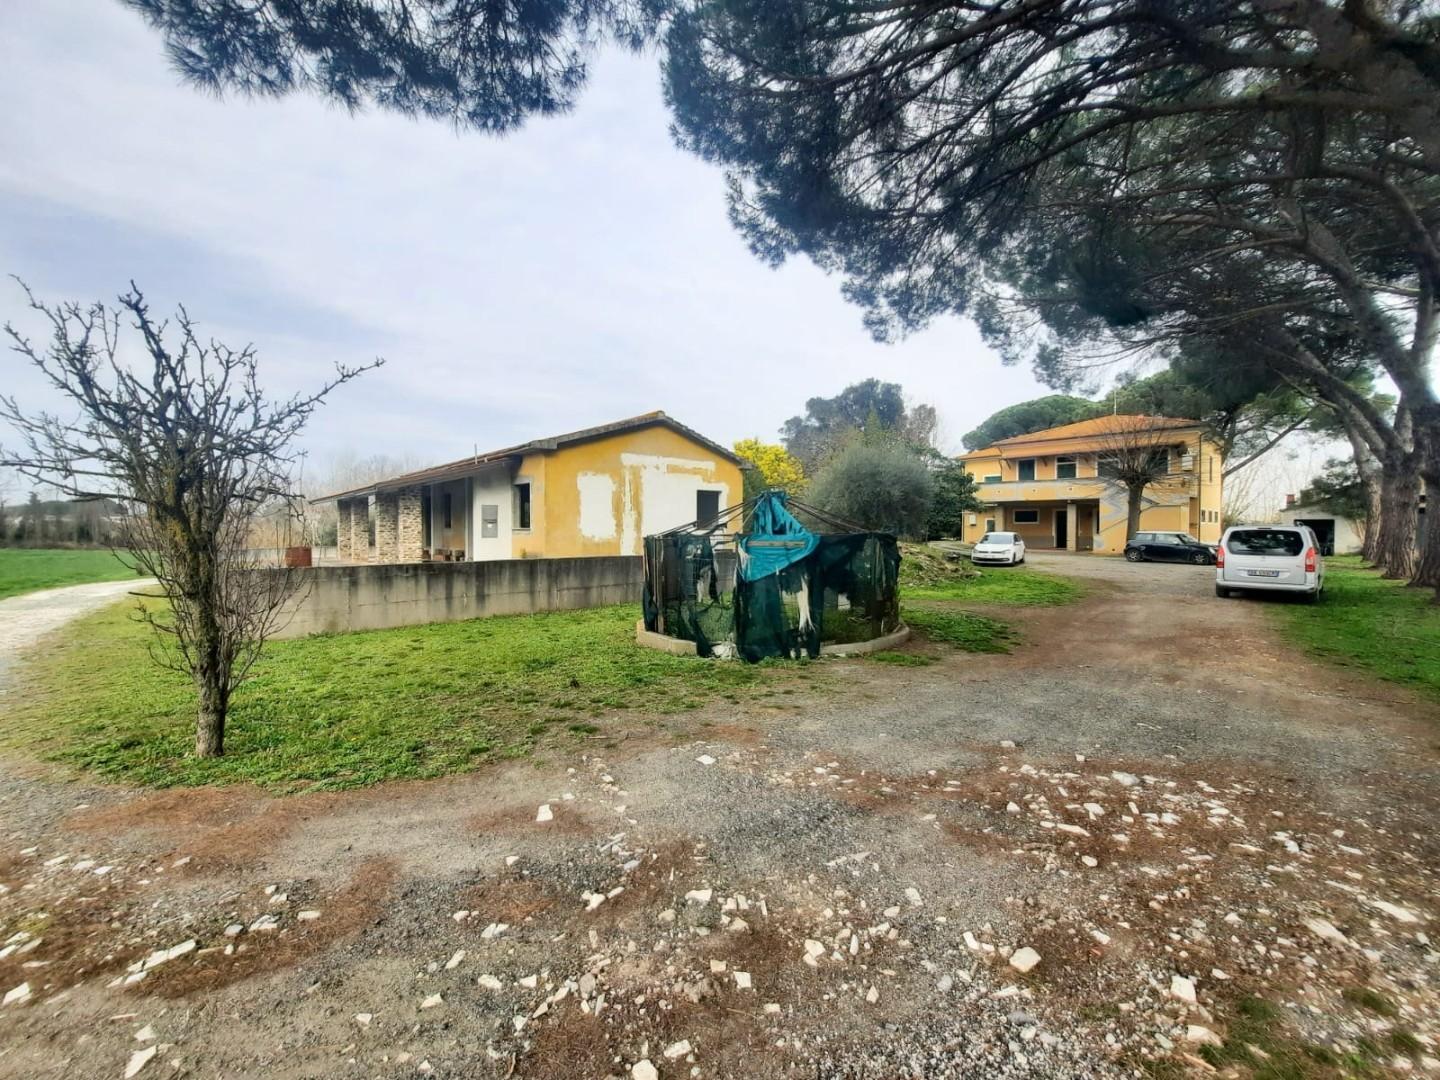 Casa indipendente in vendita a Perignano, Casciana Terme Lari (PI)